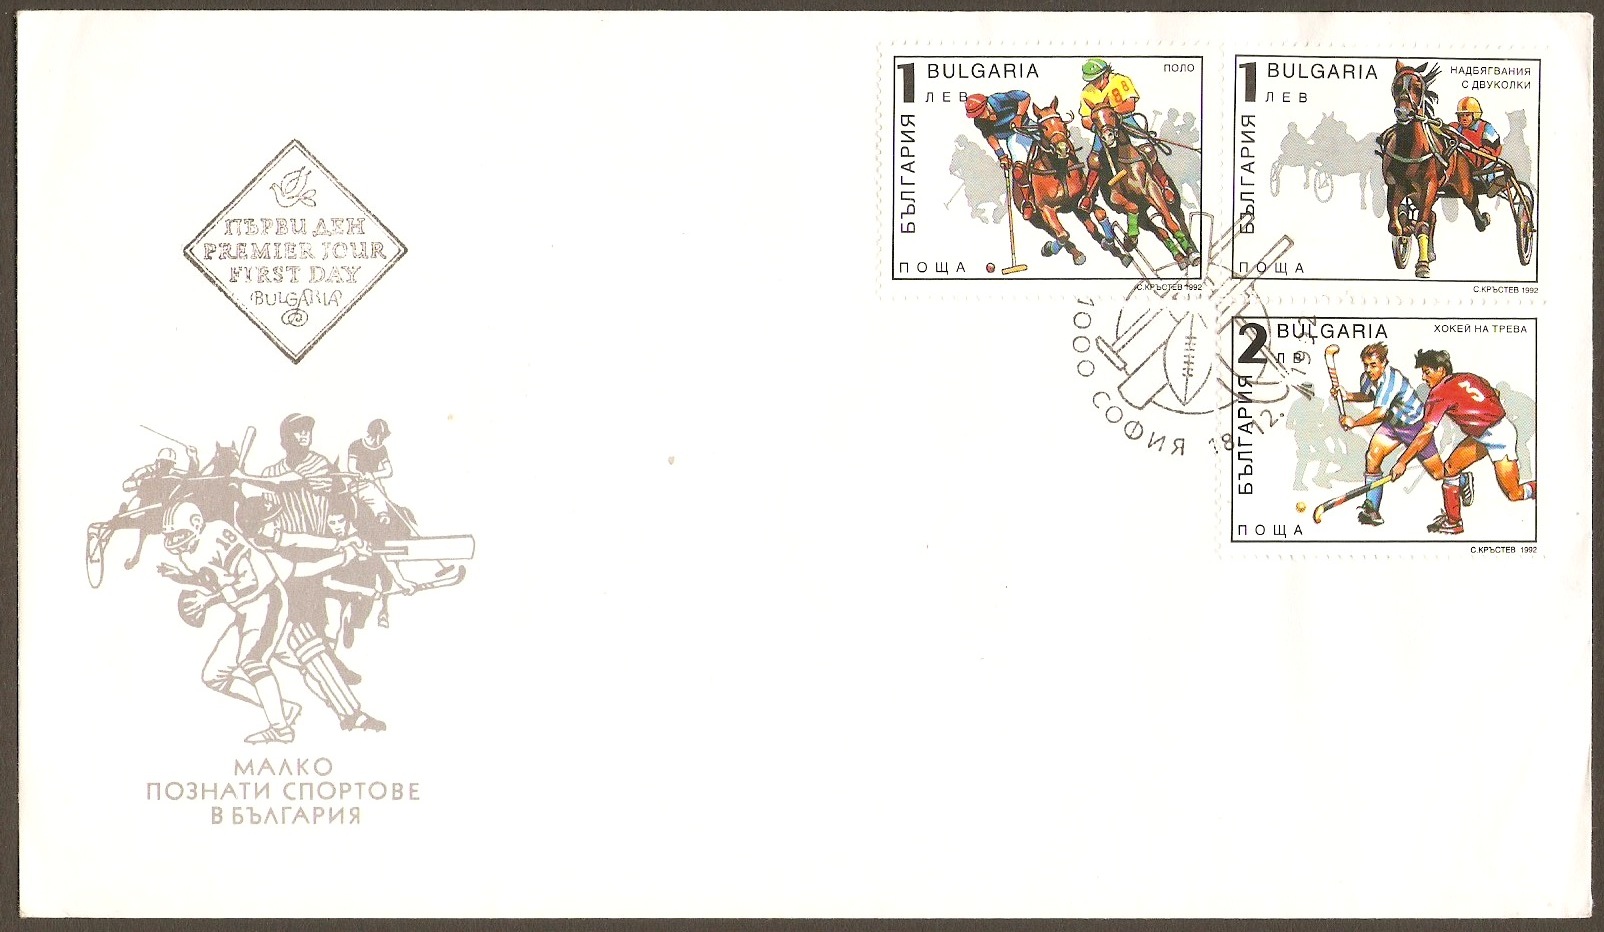 Bulgaria Postal Ephemera